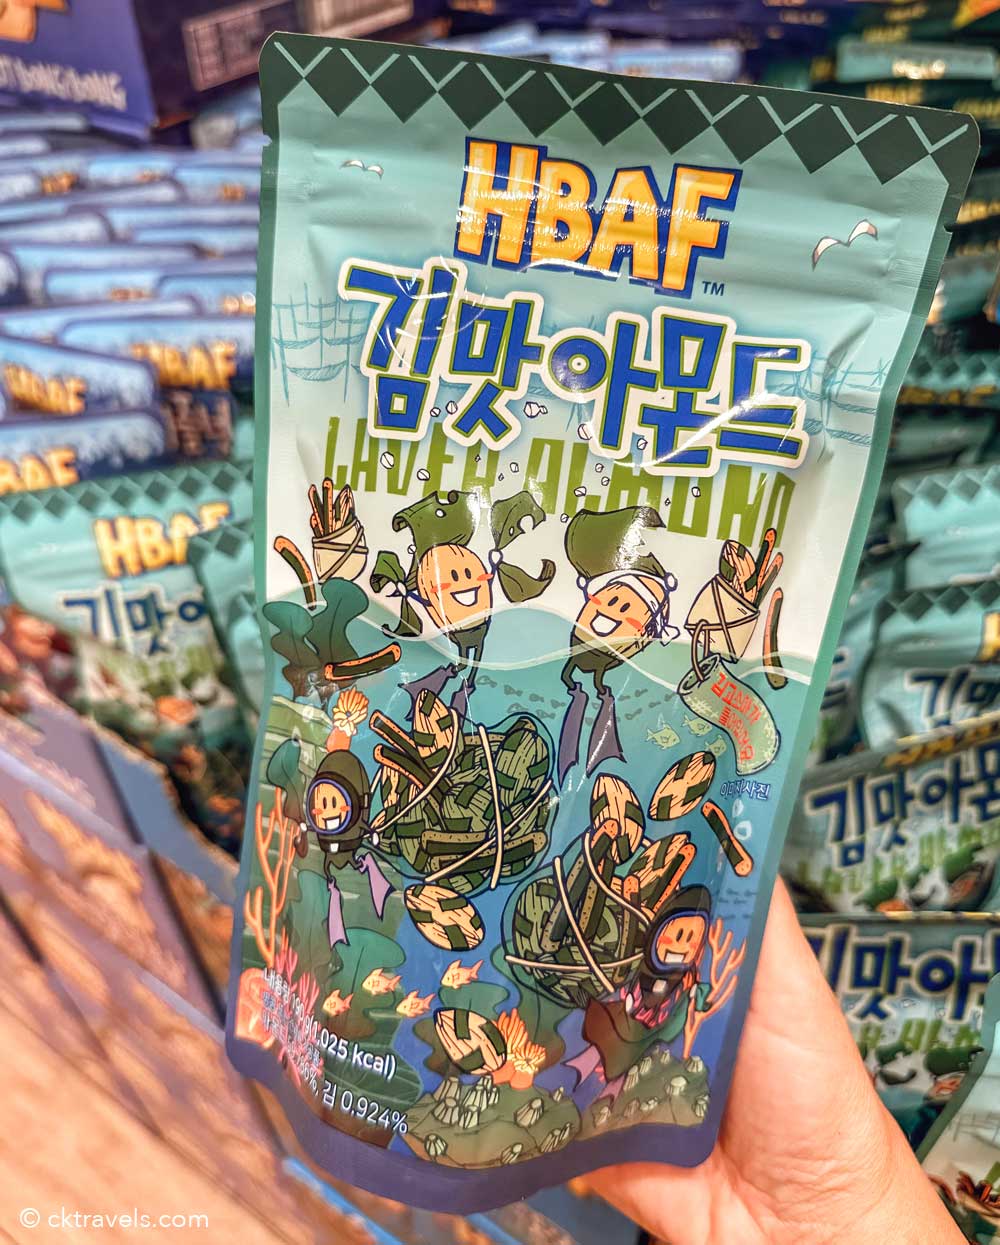 HBAF laver Almonds south korea